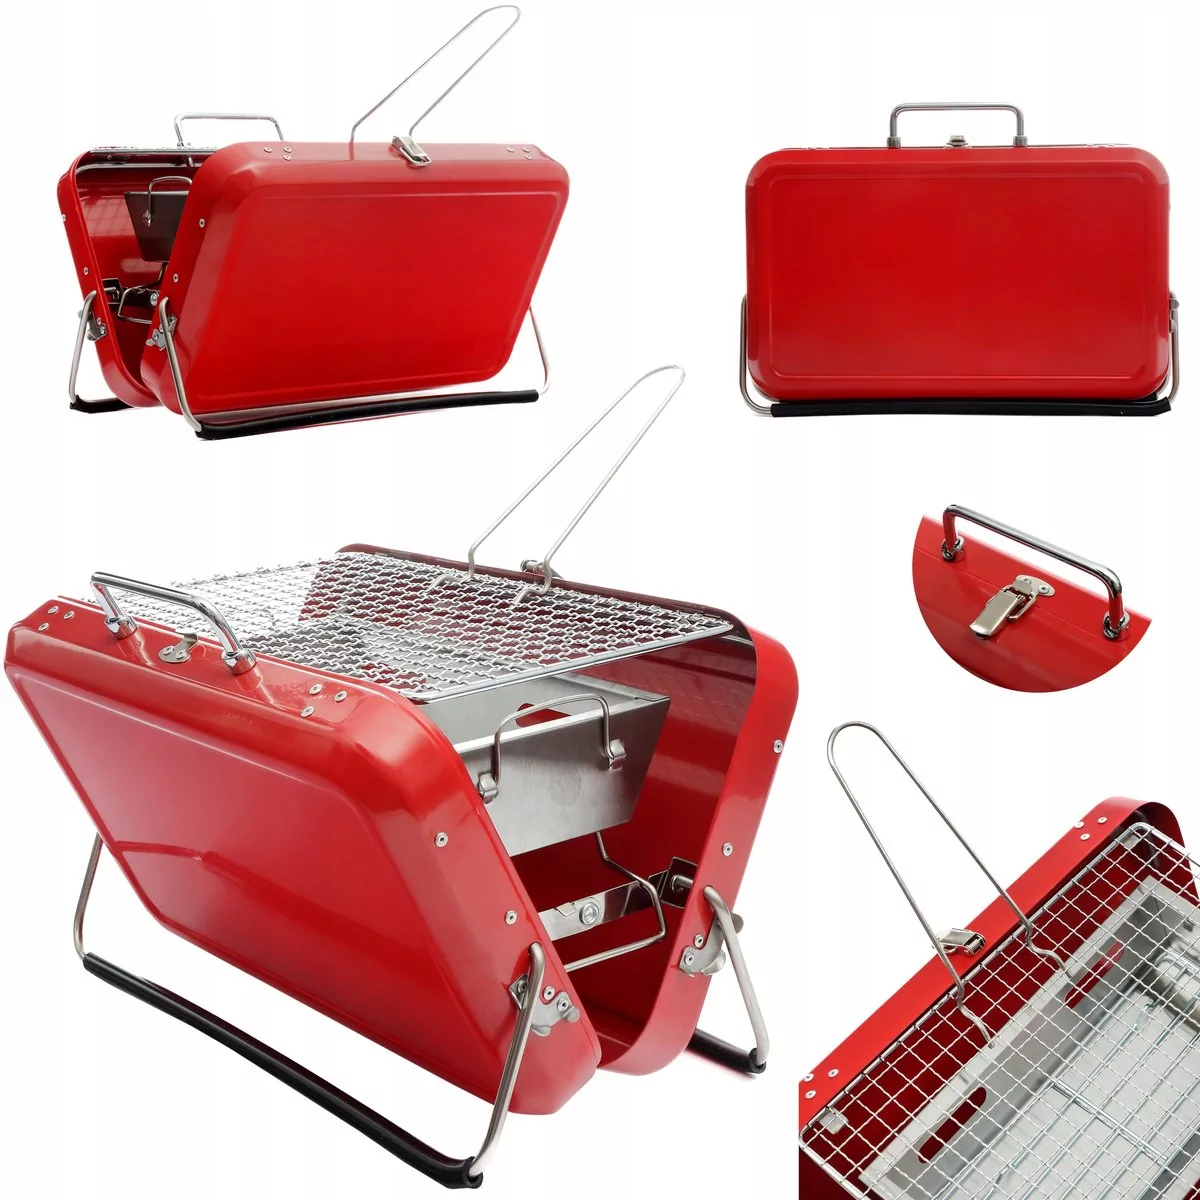 Mobilny grill piknikowy walizka bushkraft czerwona